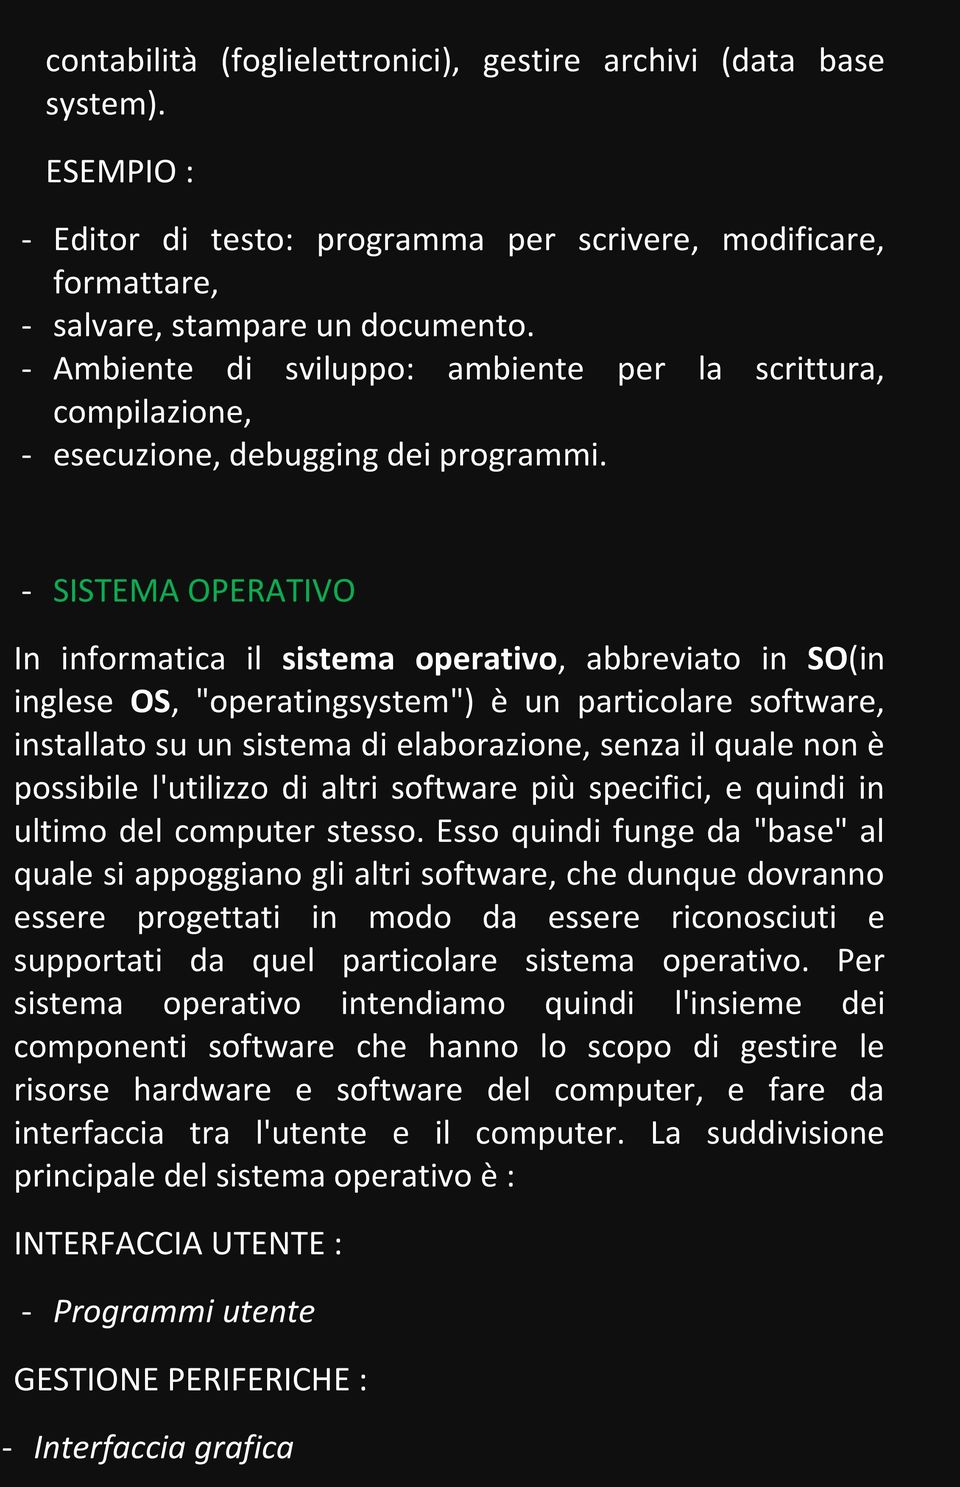 - SISTEMA OPERATIVO In informatica il sistema operativo, abbreviato in SO(in inglese OS, "operatingsystem") è un particolare software, installato su un sistema di elaborazione, senza il quale non è